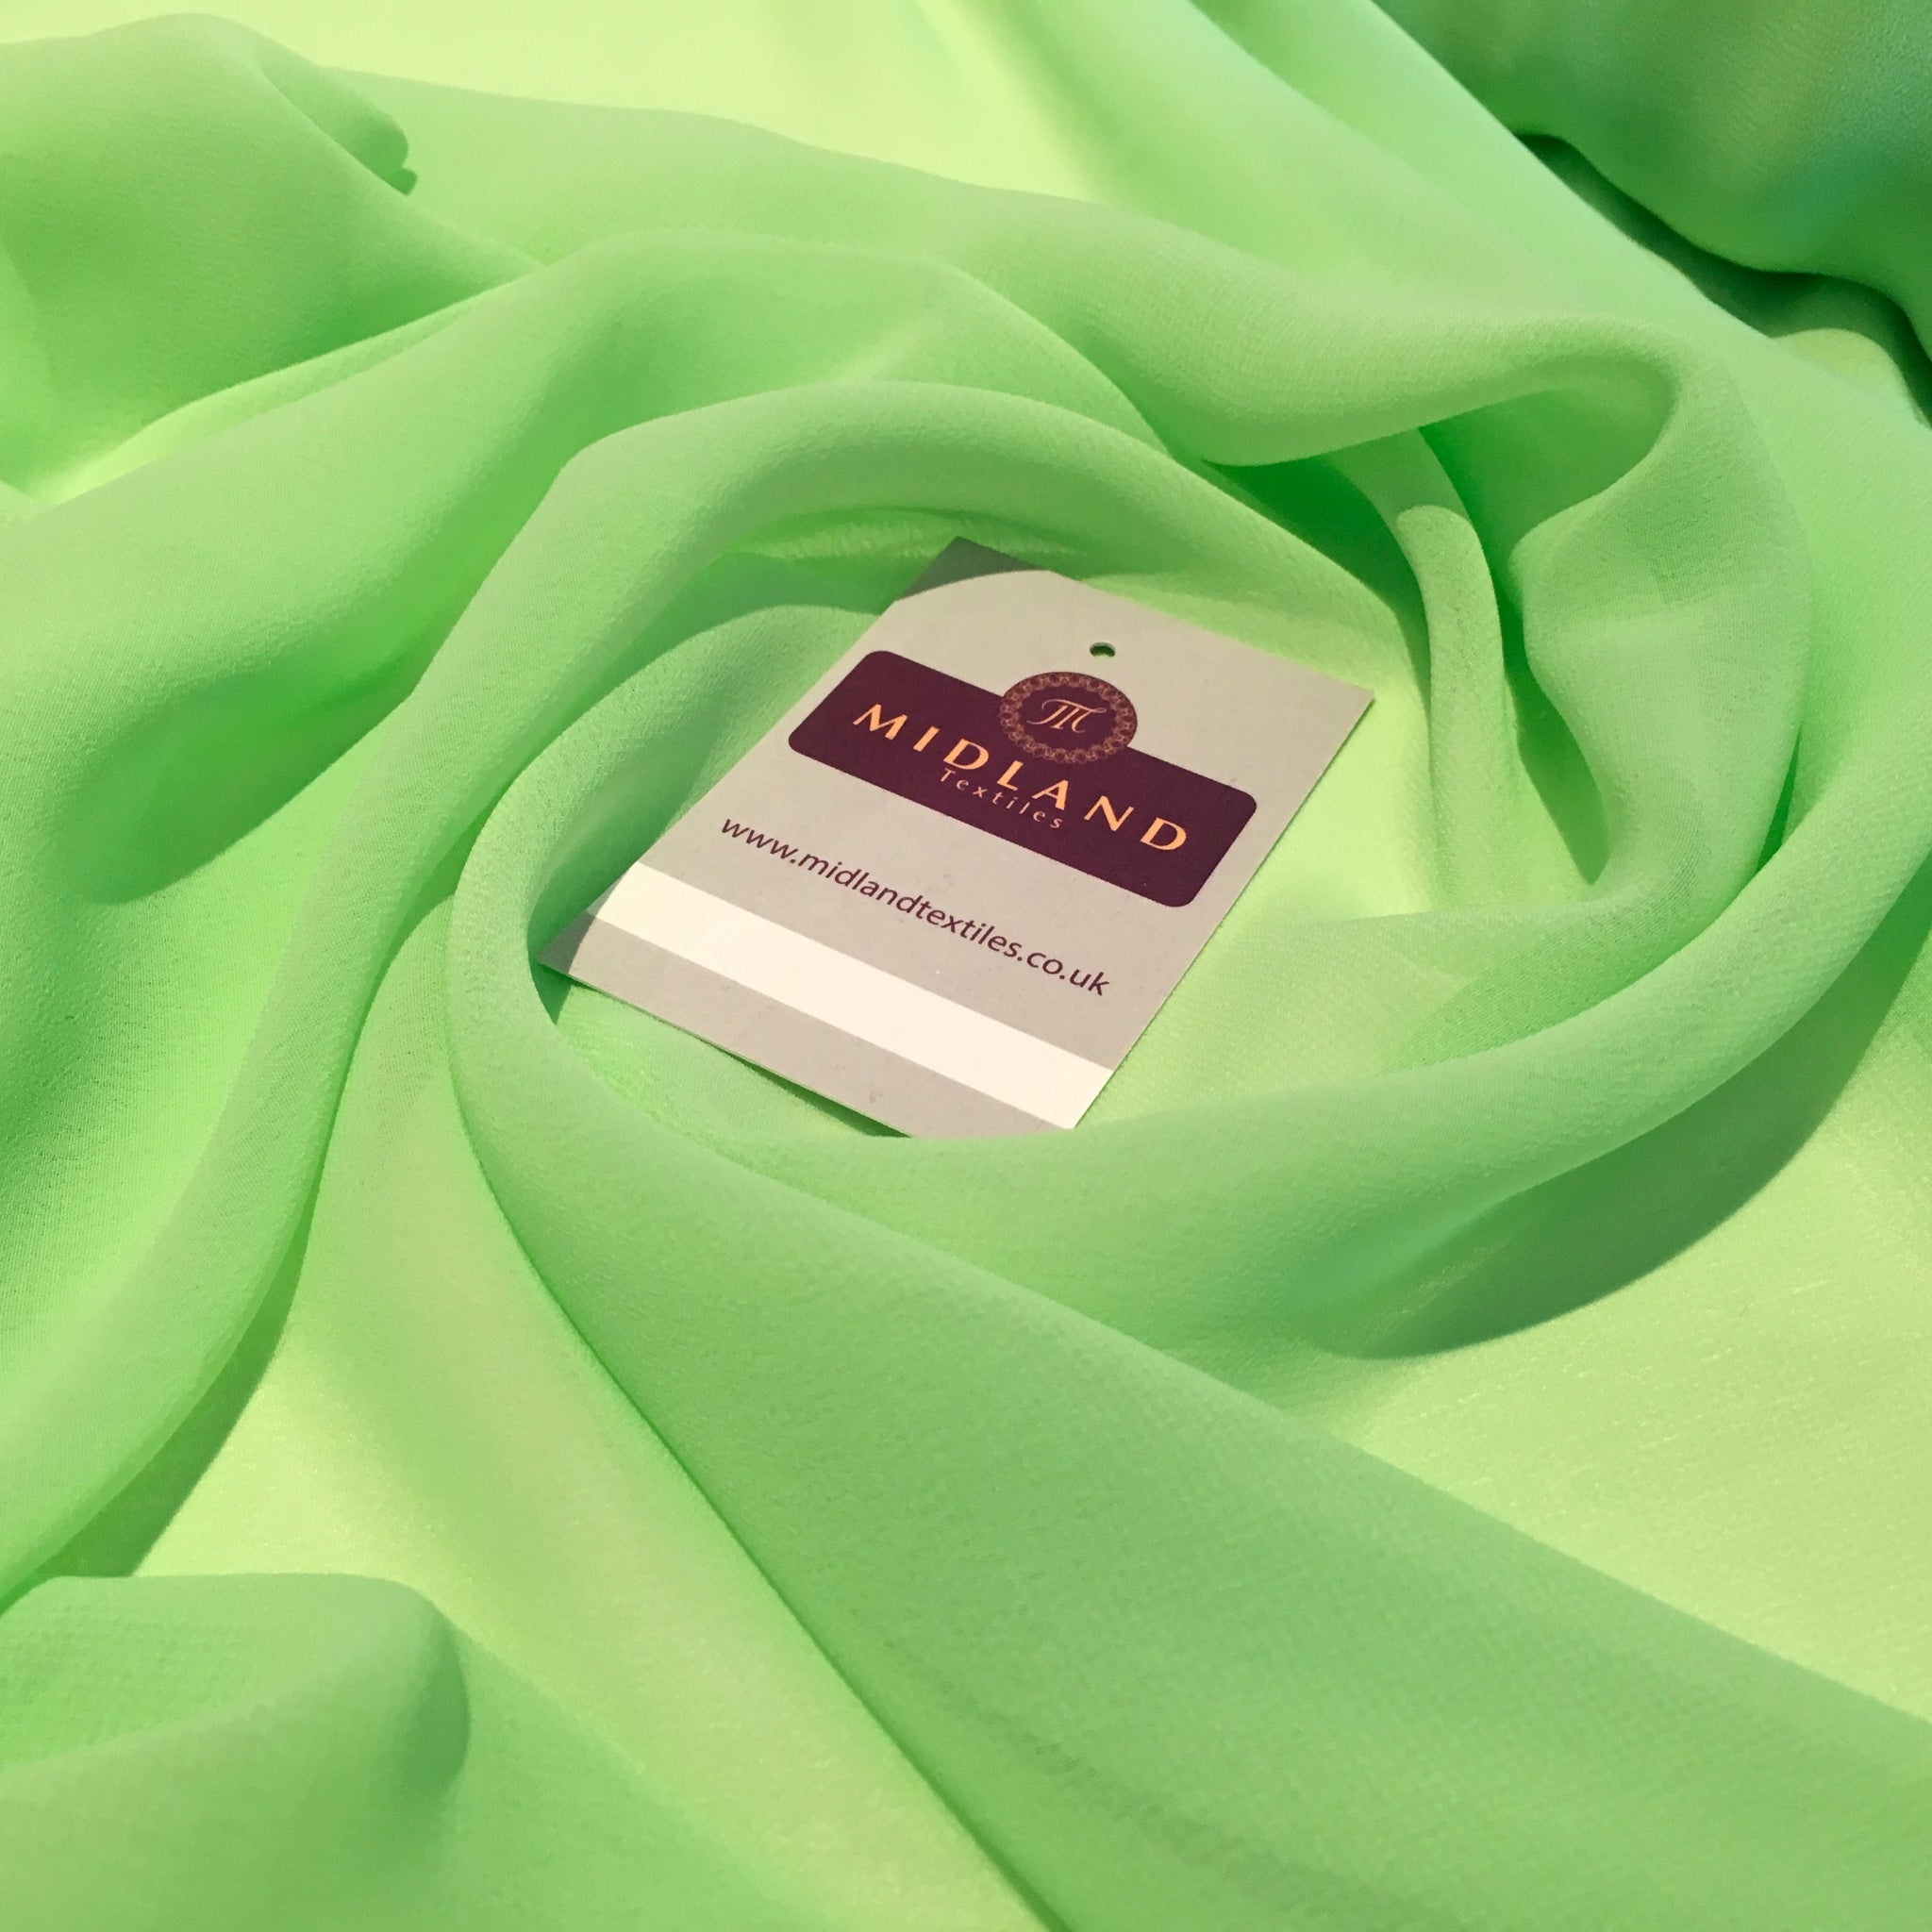 Hi-Multi Caress Chiffon Sheer Fabric Semi-Transparent 42" M608 Mtex